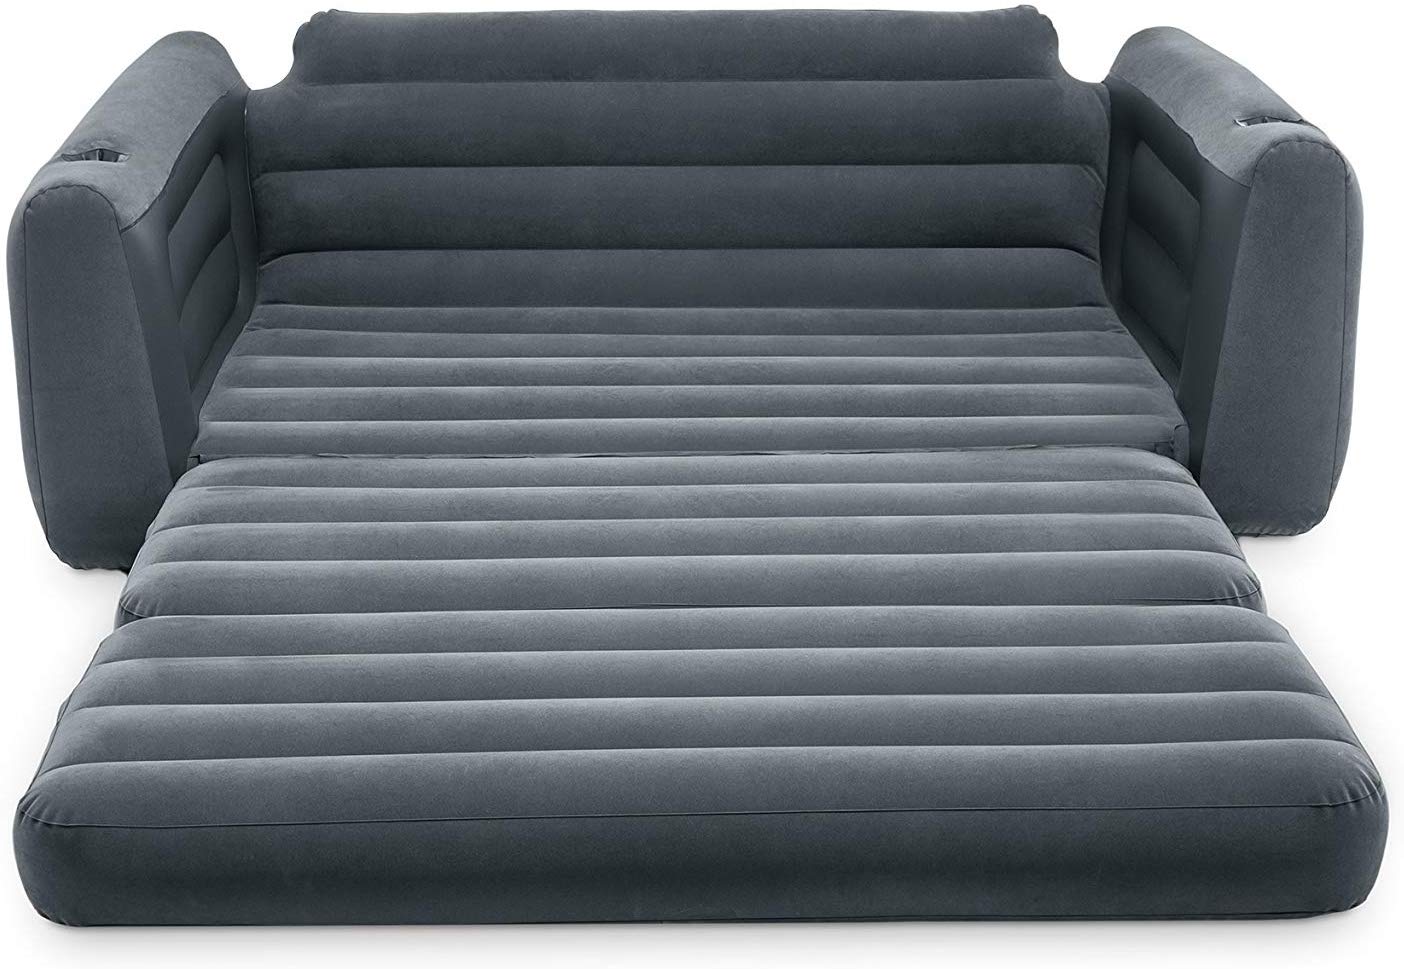  диван Intex 66552 – PandaShop.md. Купить надувной диван Intex .